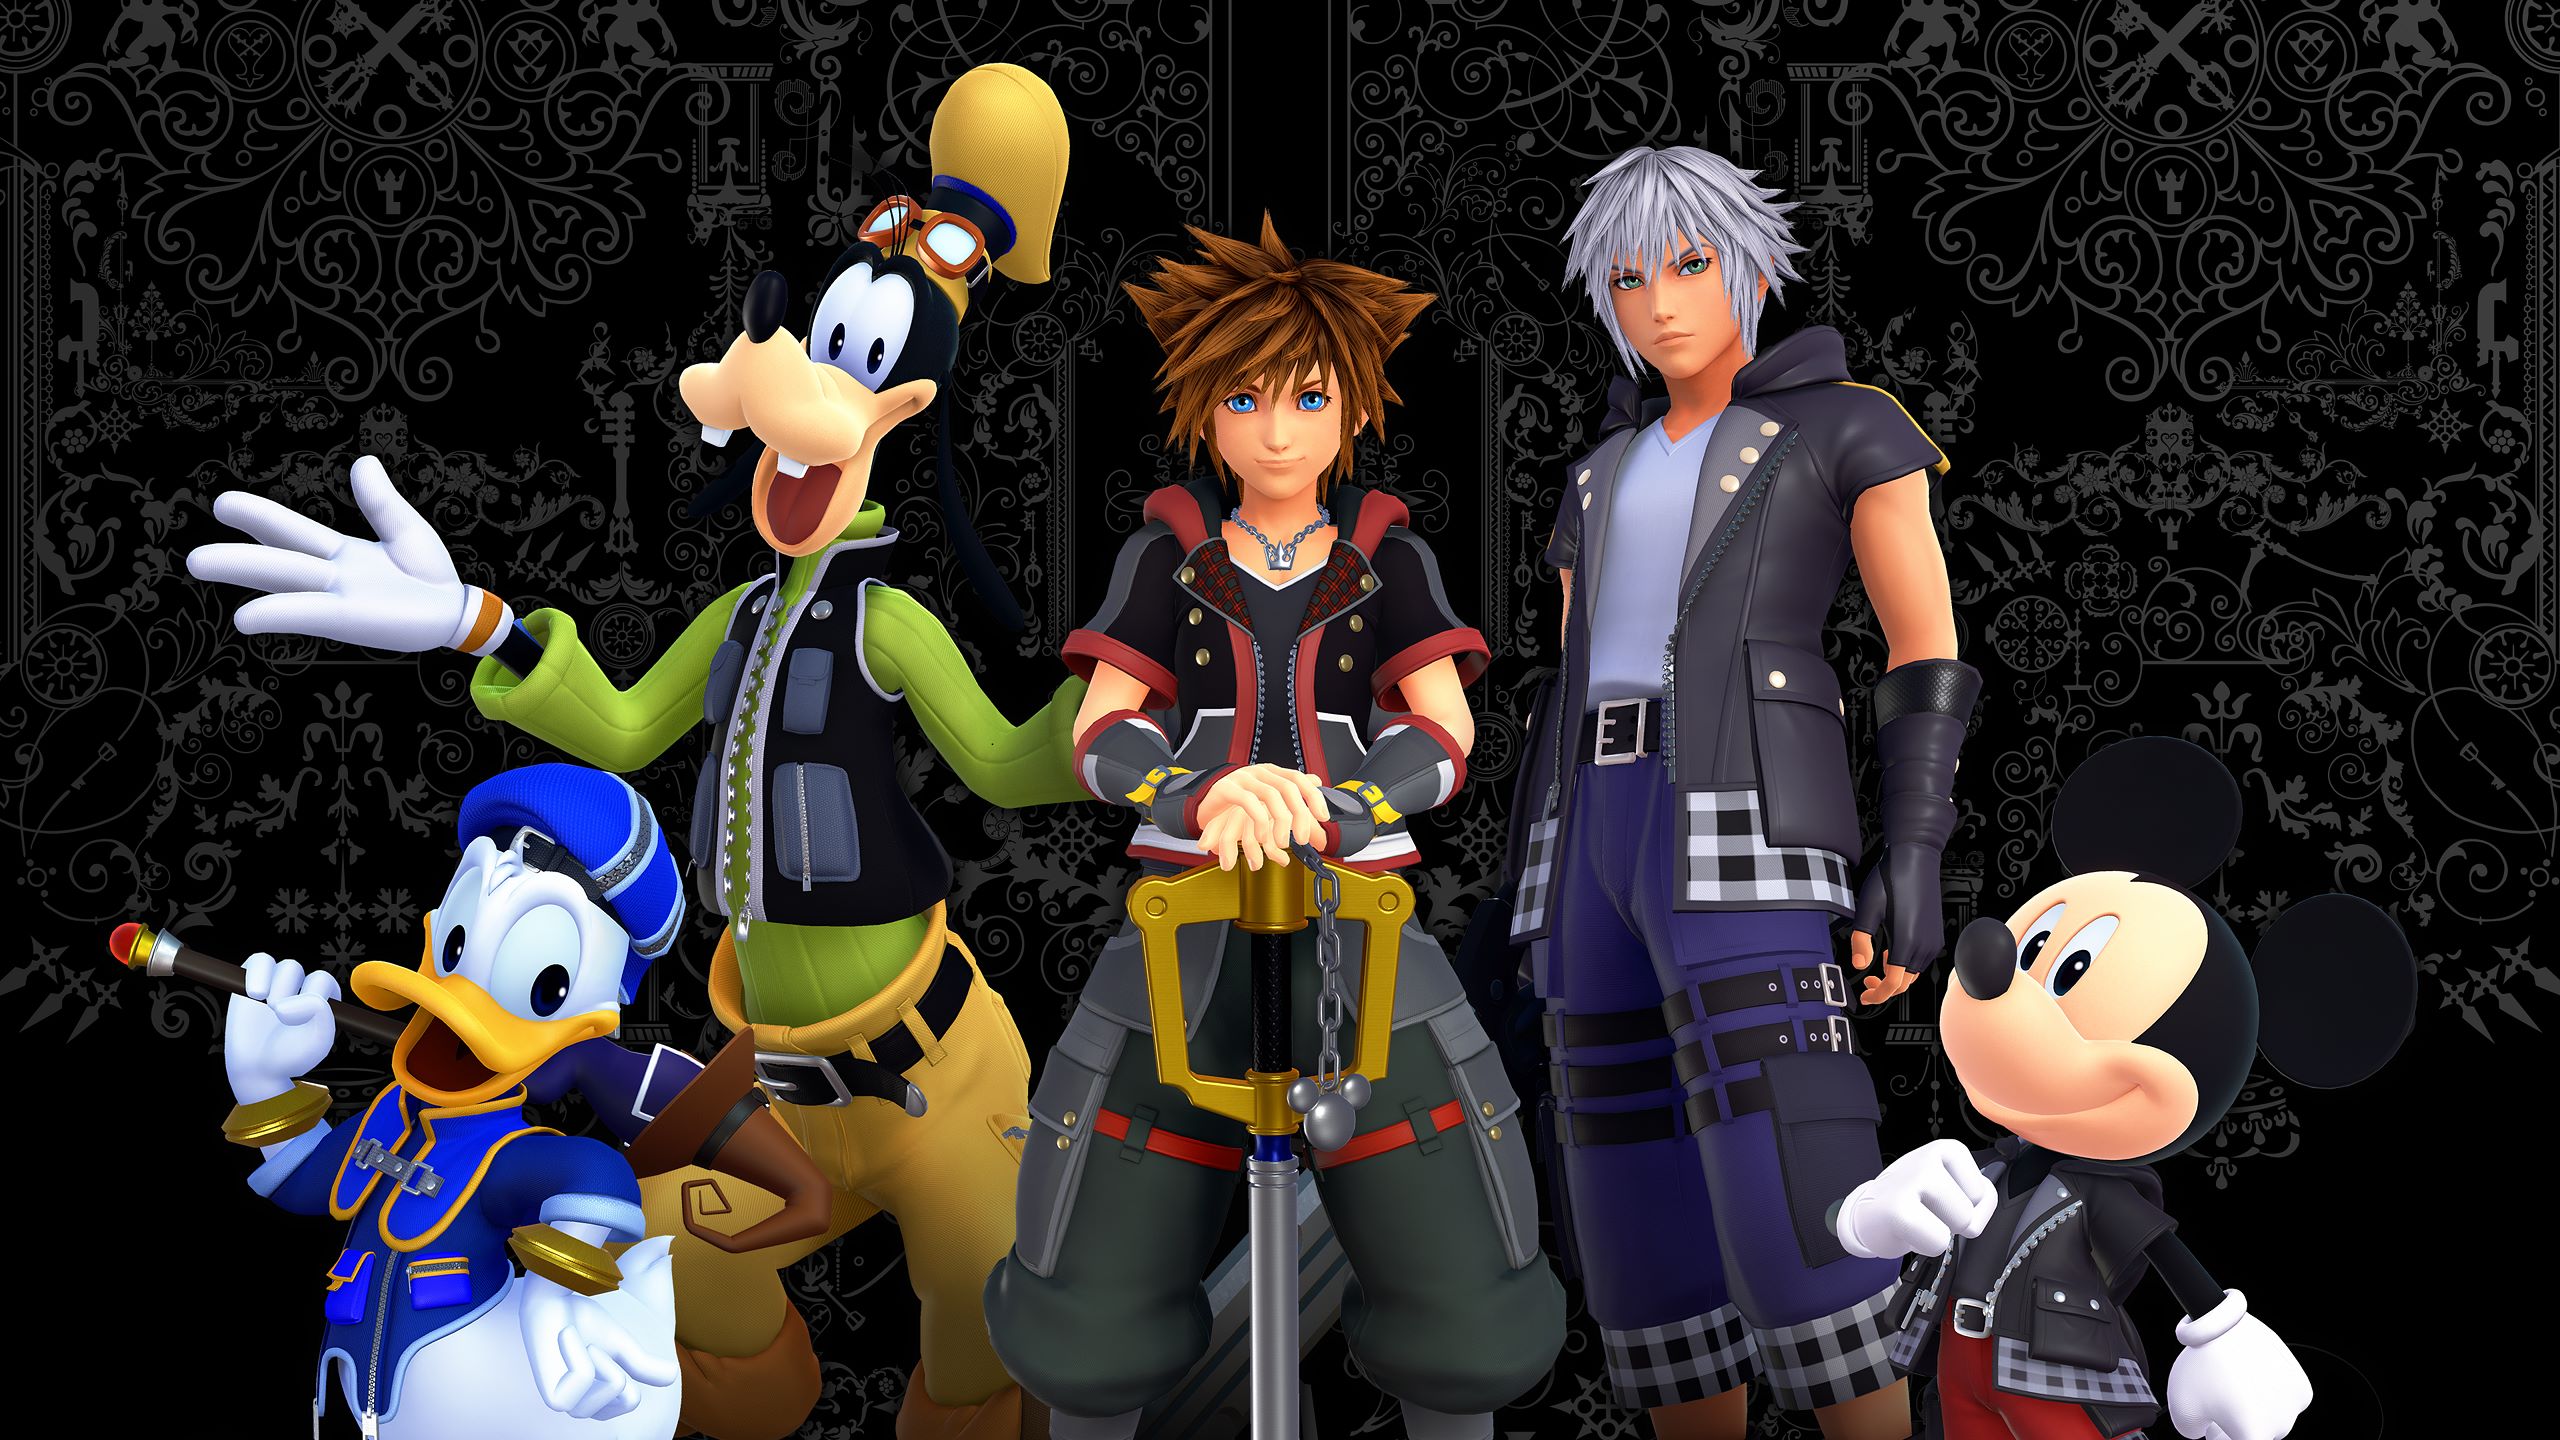 Kingdom Hearts 3 Sora Kingdom Hearts Mickey Mouse Donald Duck Goofy Kingdom Hearts 2560x1440